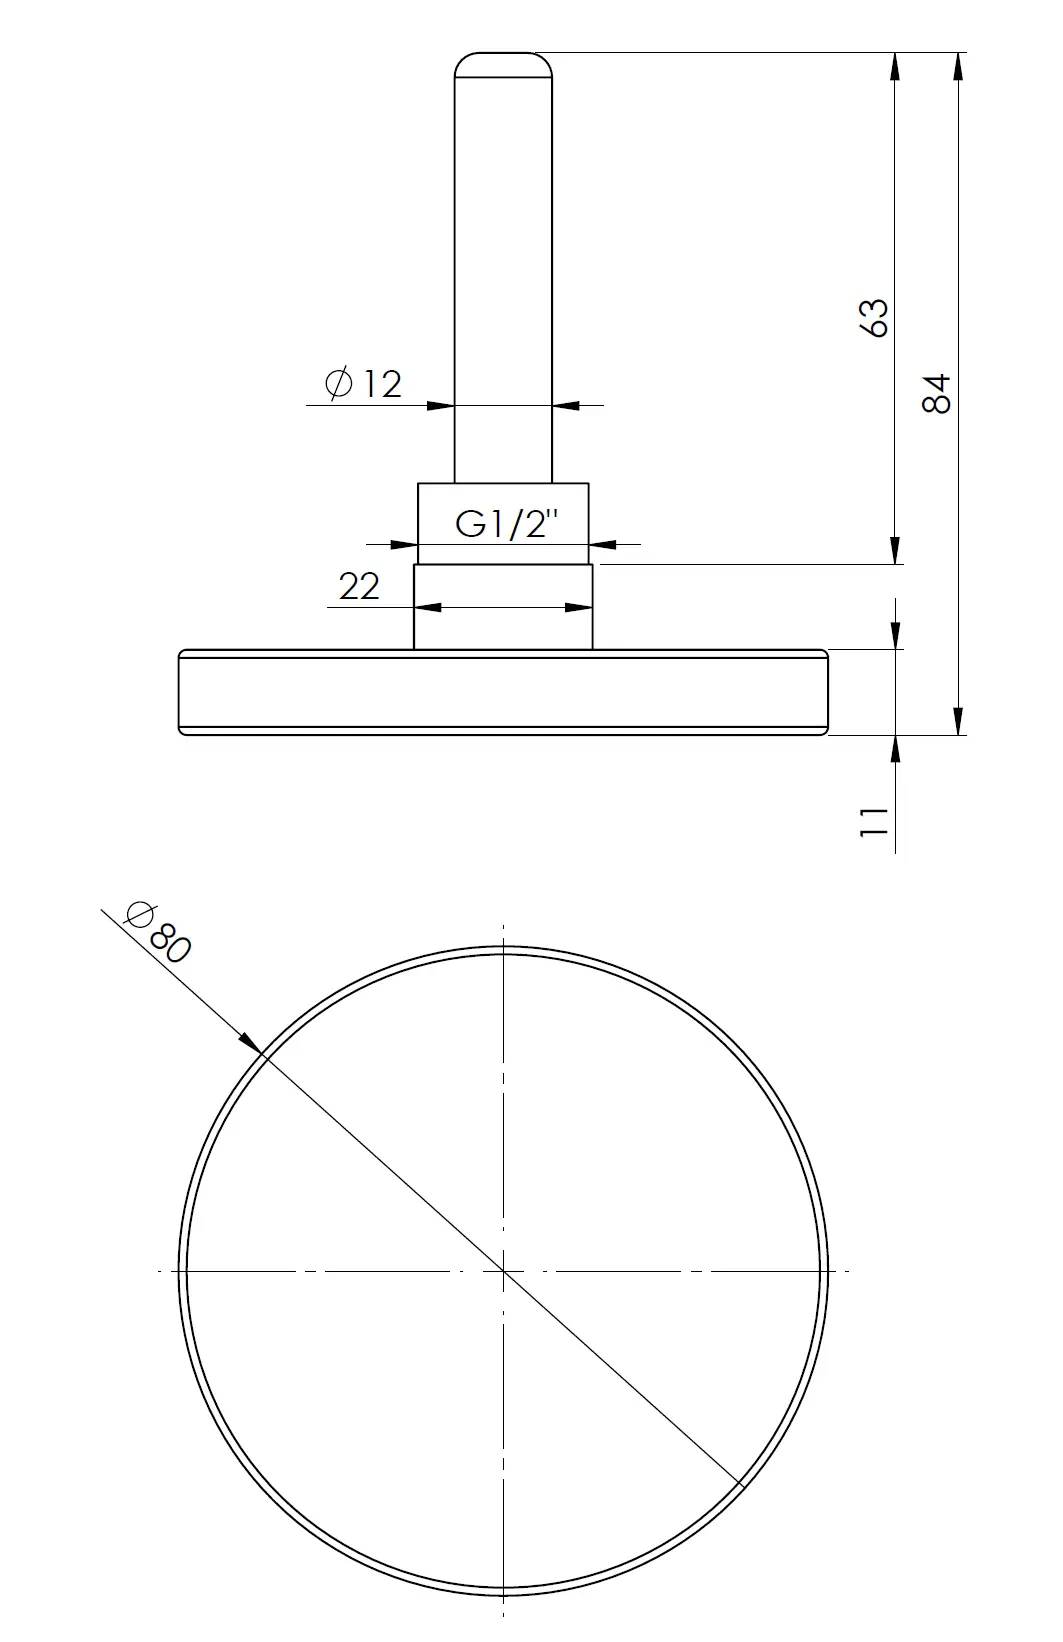 Termometr bimetaliczny BiTh 80, fi80 mm, 0÷120°C, L 63 mm, G1/2", ax, kl. 2 - budowa